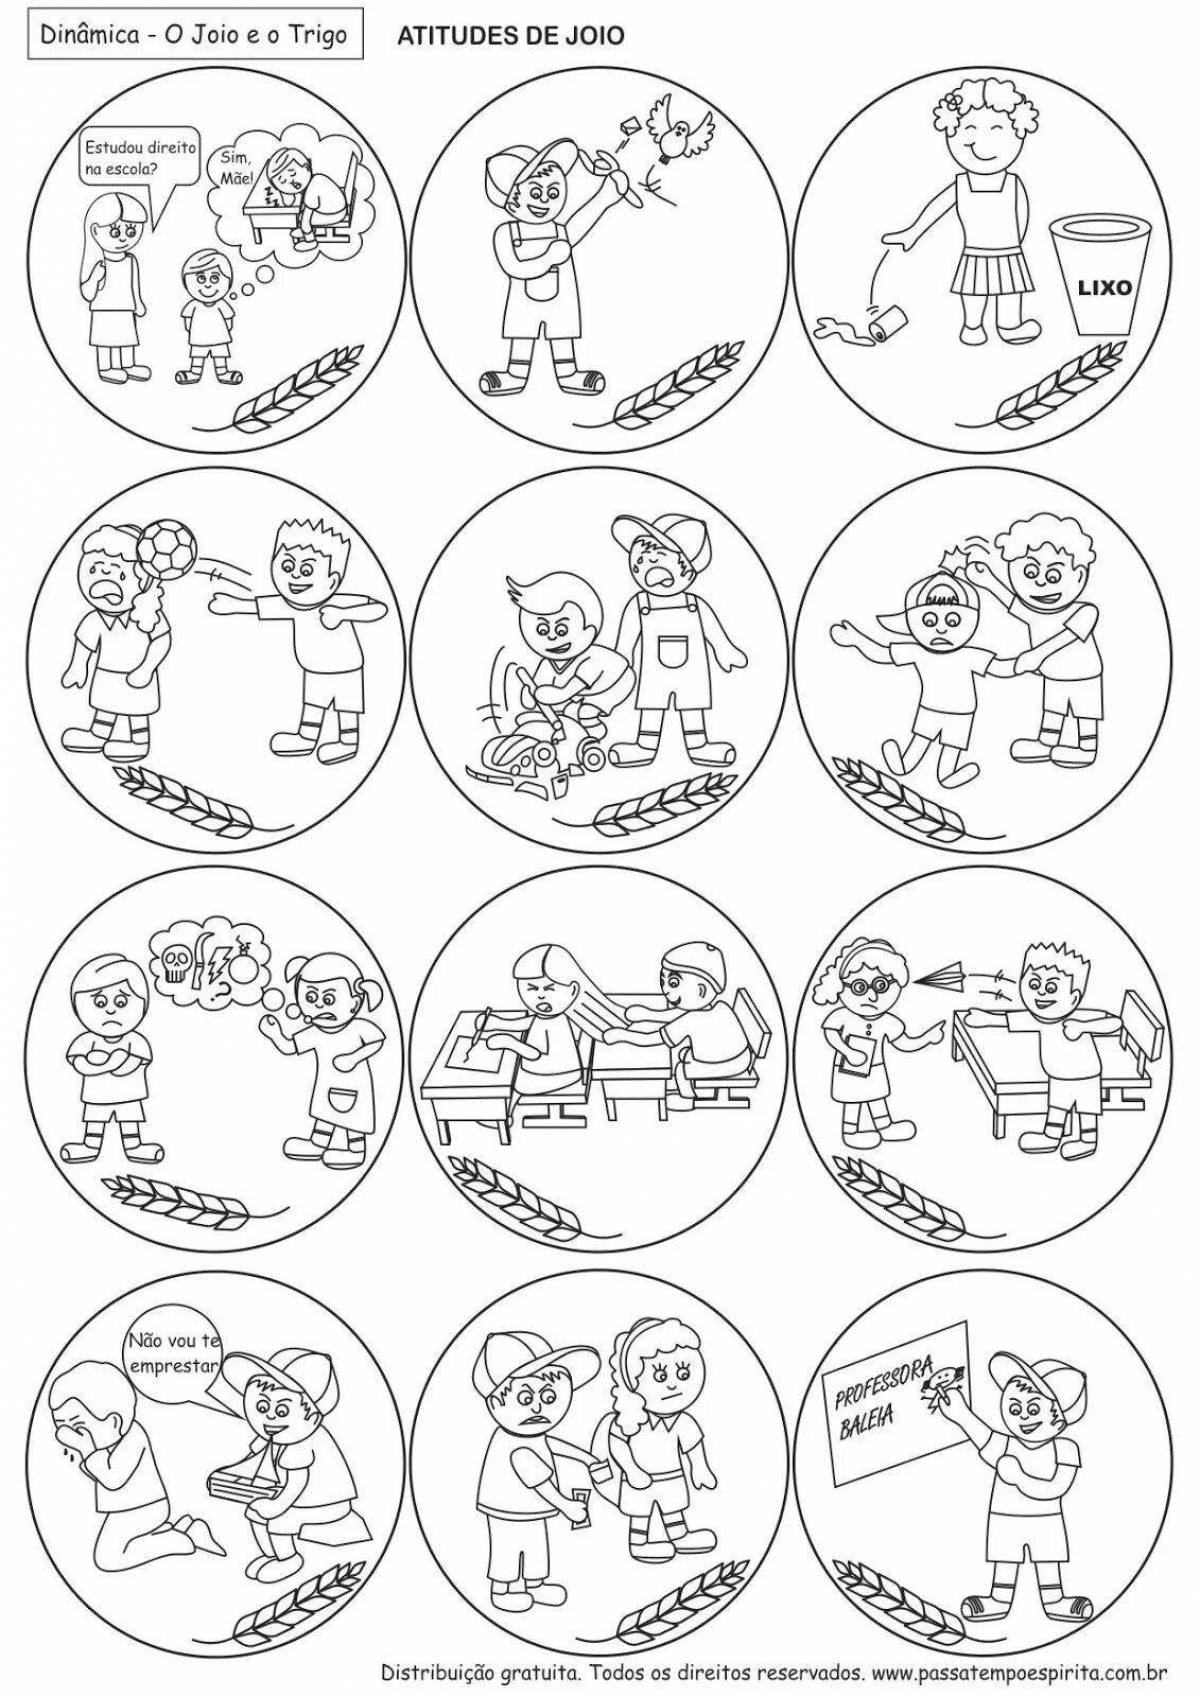 Креативная раскраска для детей правила поведения в детском саду